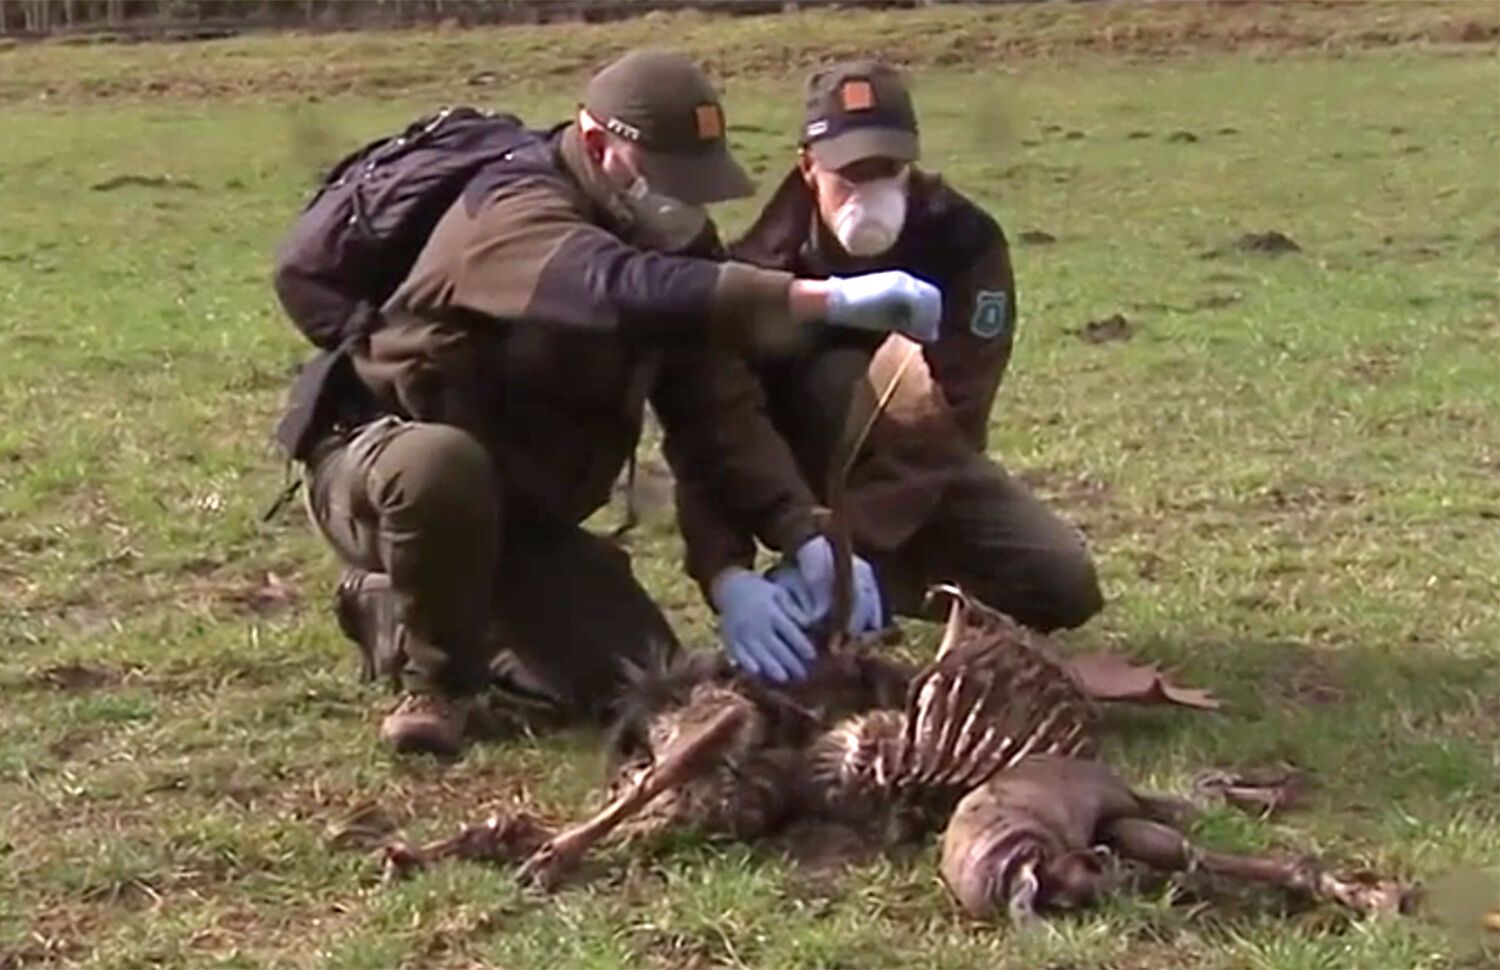 Los agentes rurales inspeccionan uno de los animales abatidos / Foto: TV3